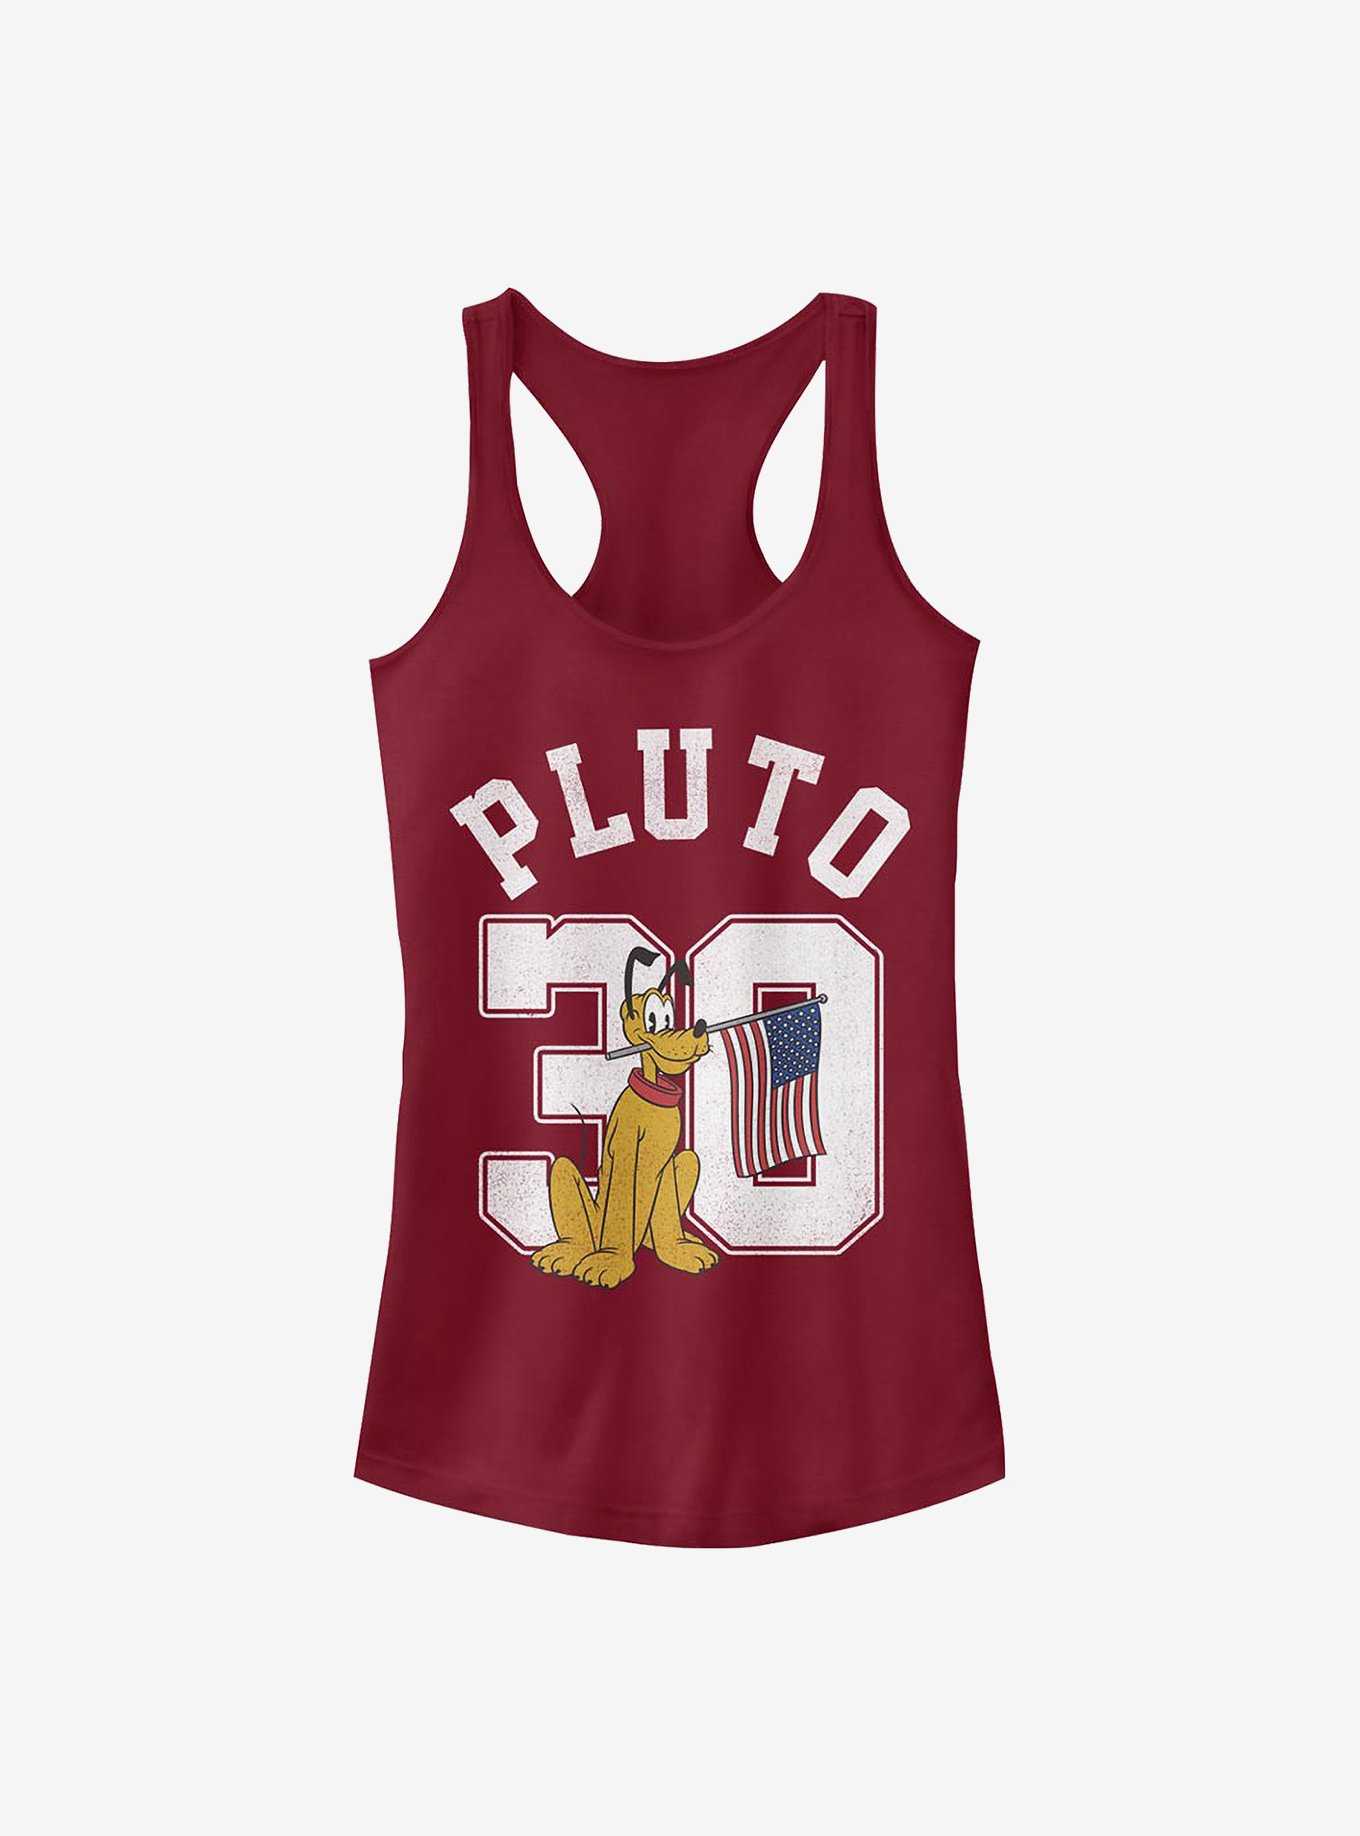 Disney Pluto Pluto Collegiate Girls Tank, , hi-res